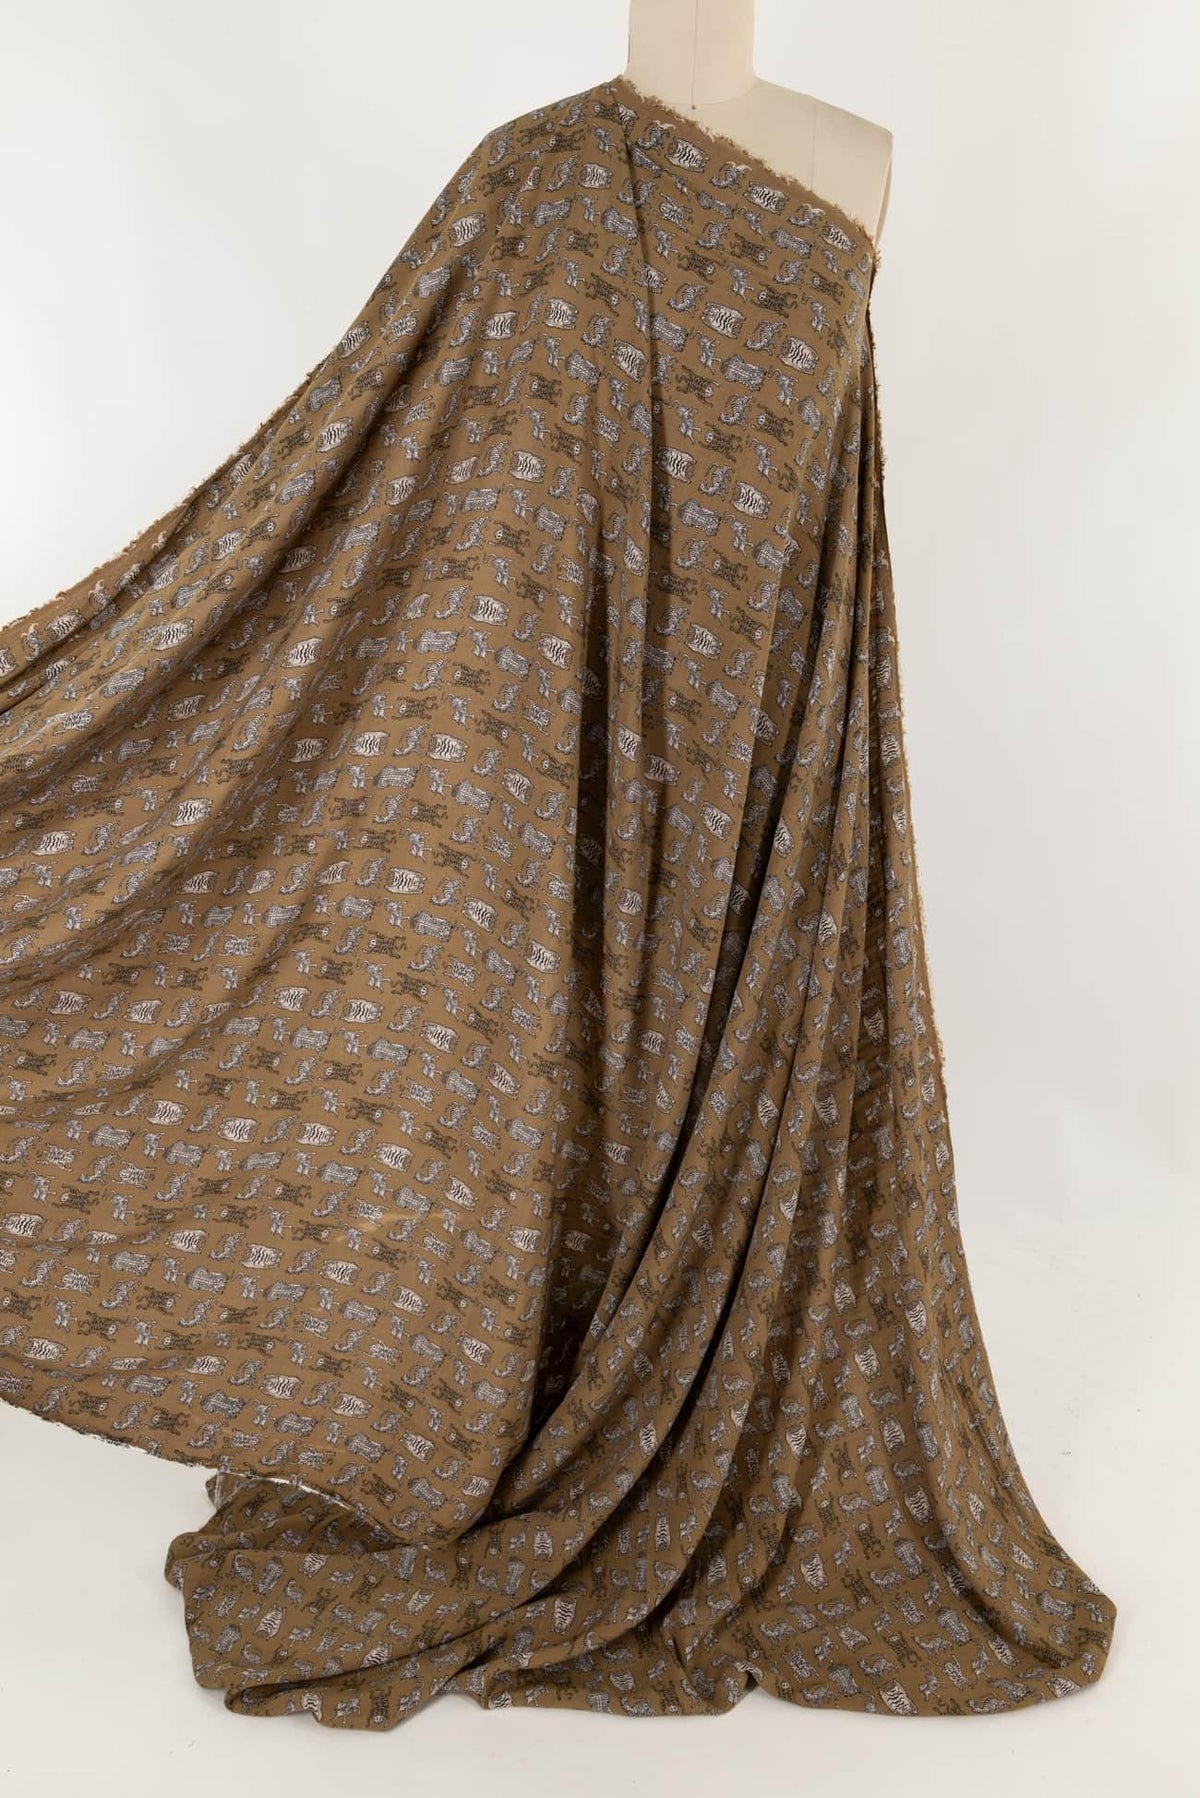 Mythical Beasts Italian Viscose Woven - Marcy Tilton Fabrics